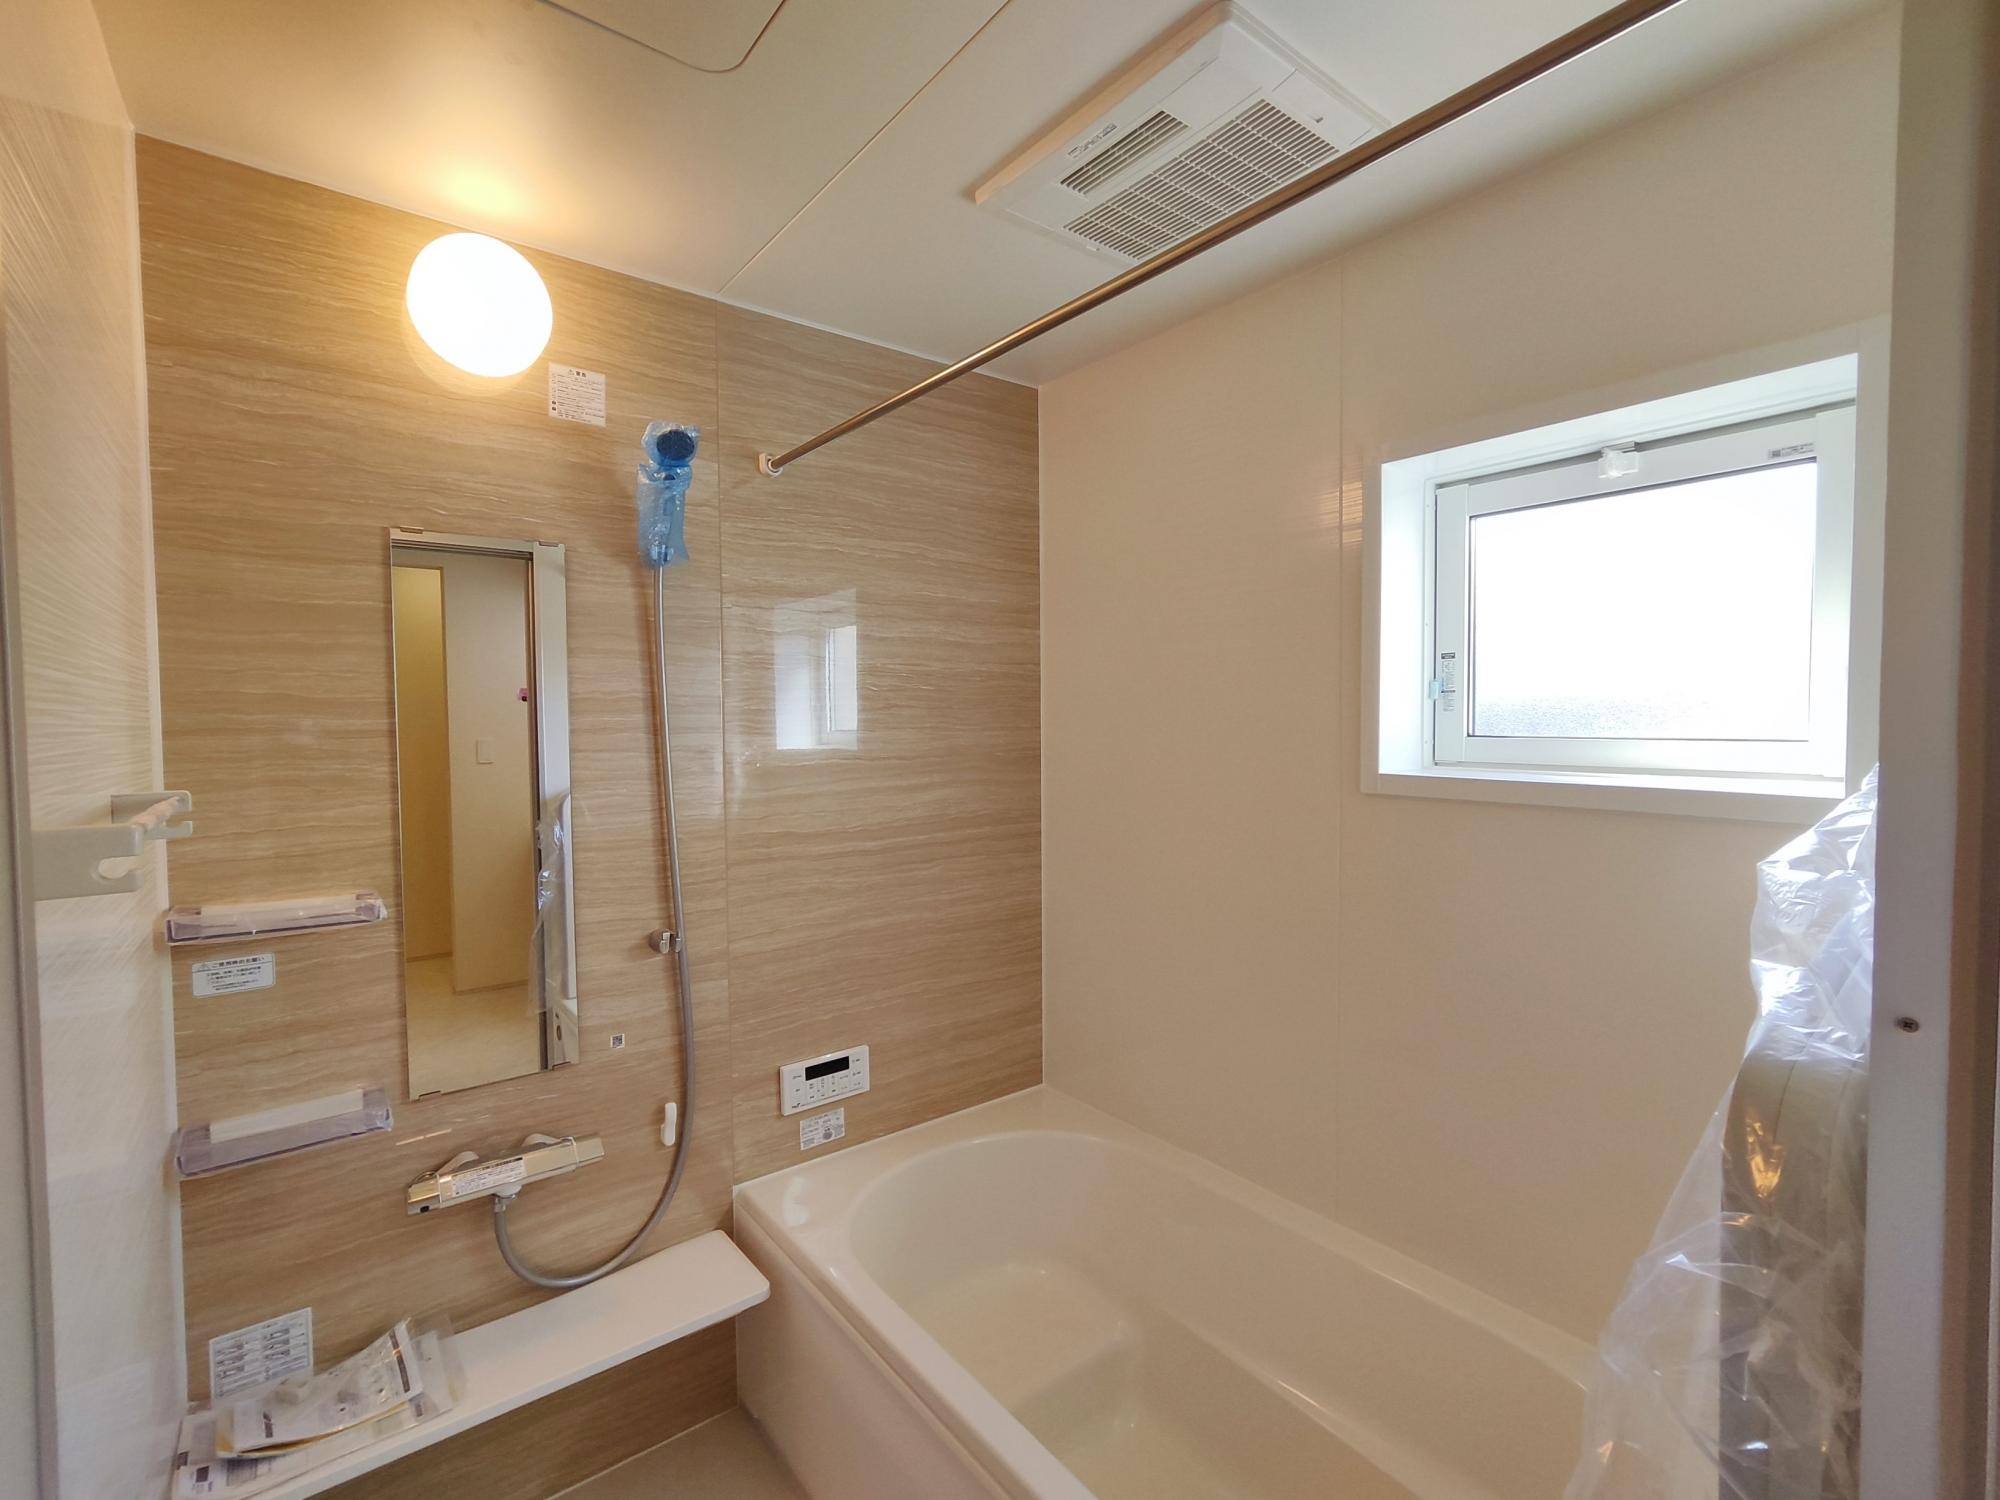 【1号棟】　アクセントクロス採用した浴室はオシャレで、一日の疲れが癒される空間に。高断熱浴槽を採用し、4時間たっても湯温低下は2.5℃以下なので光熱費の節約にもなります。